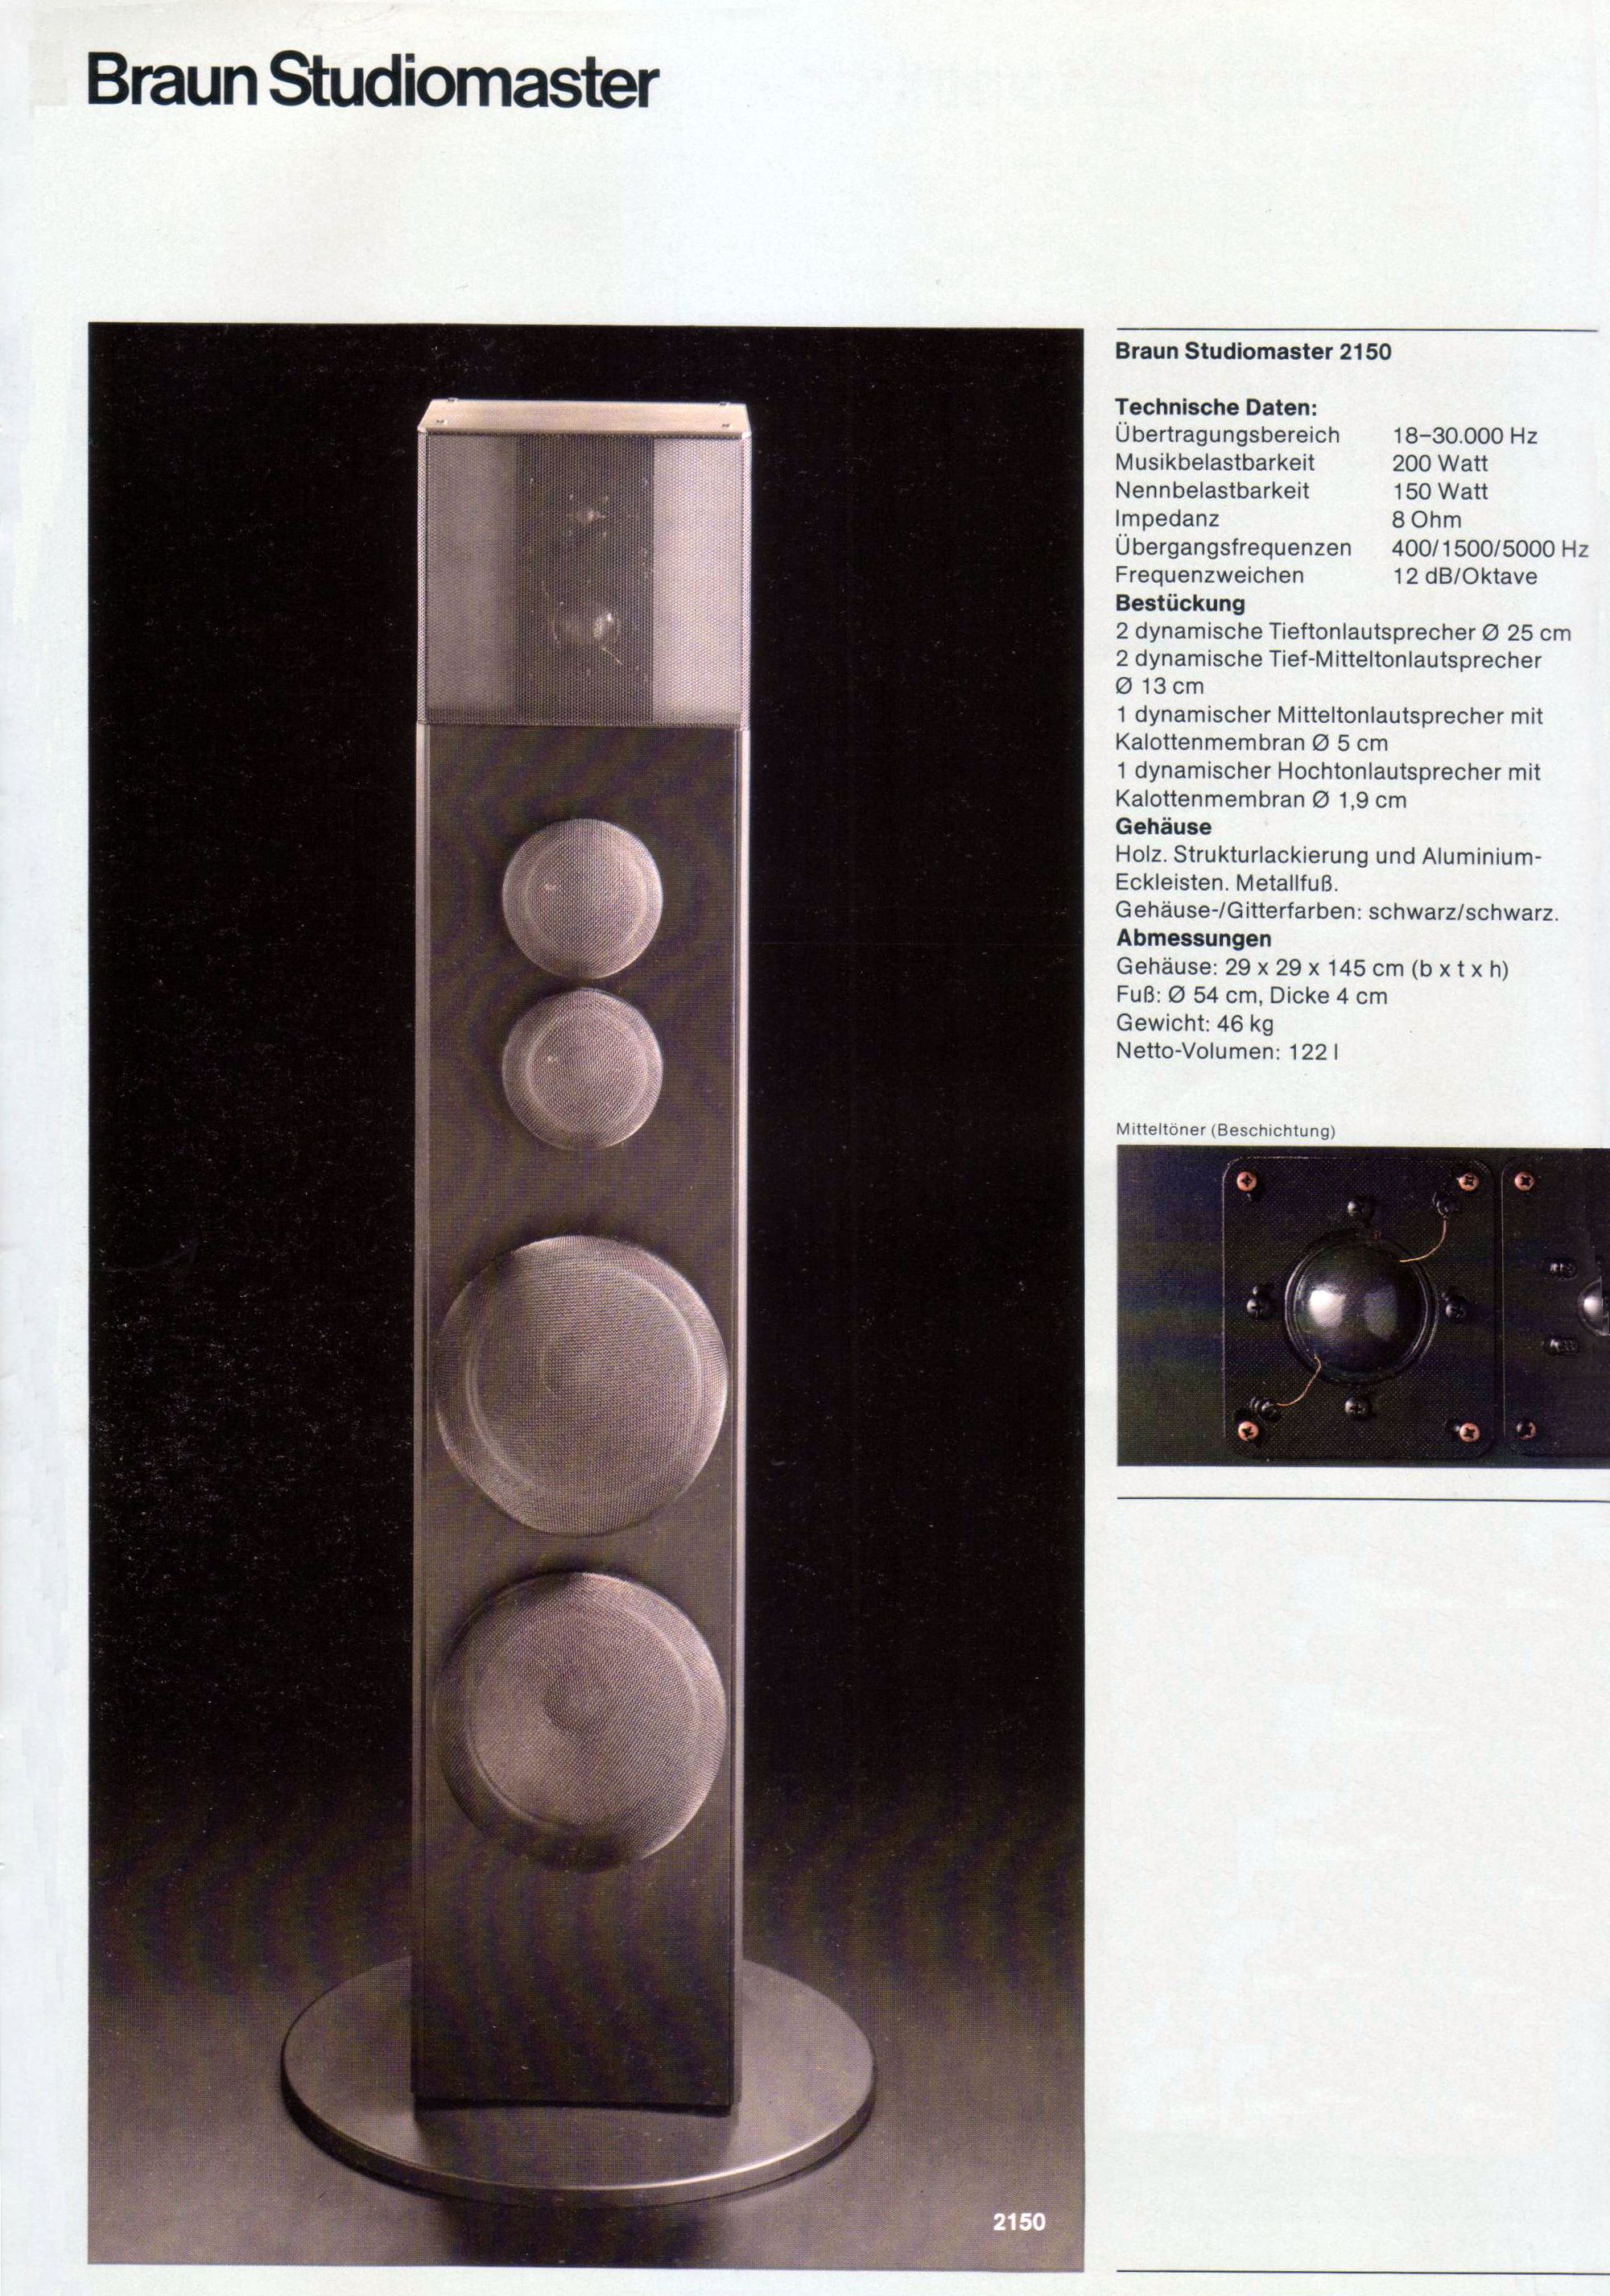 Braun Studiomaster 2150-Prospekt-1.jpg